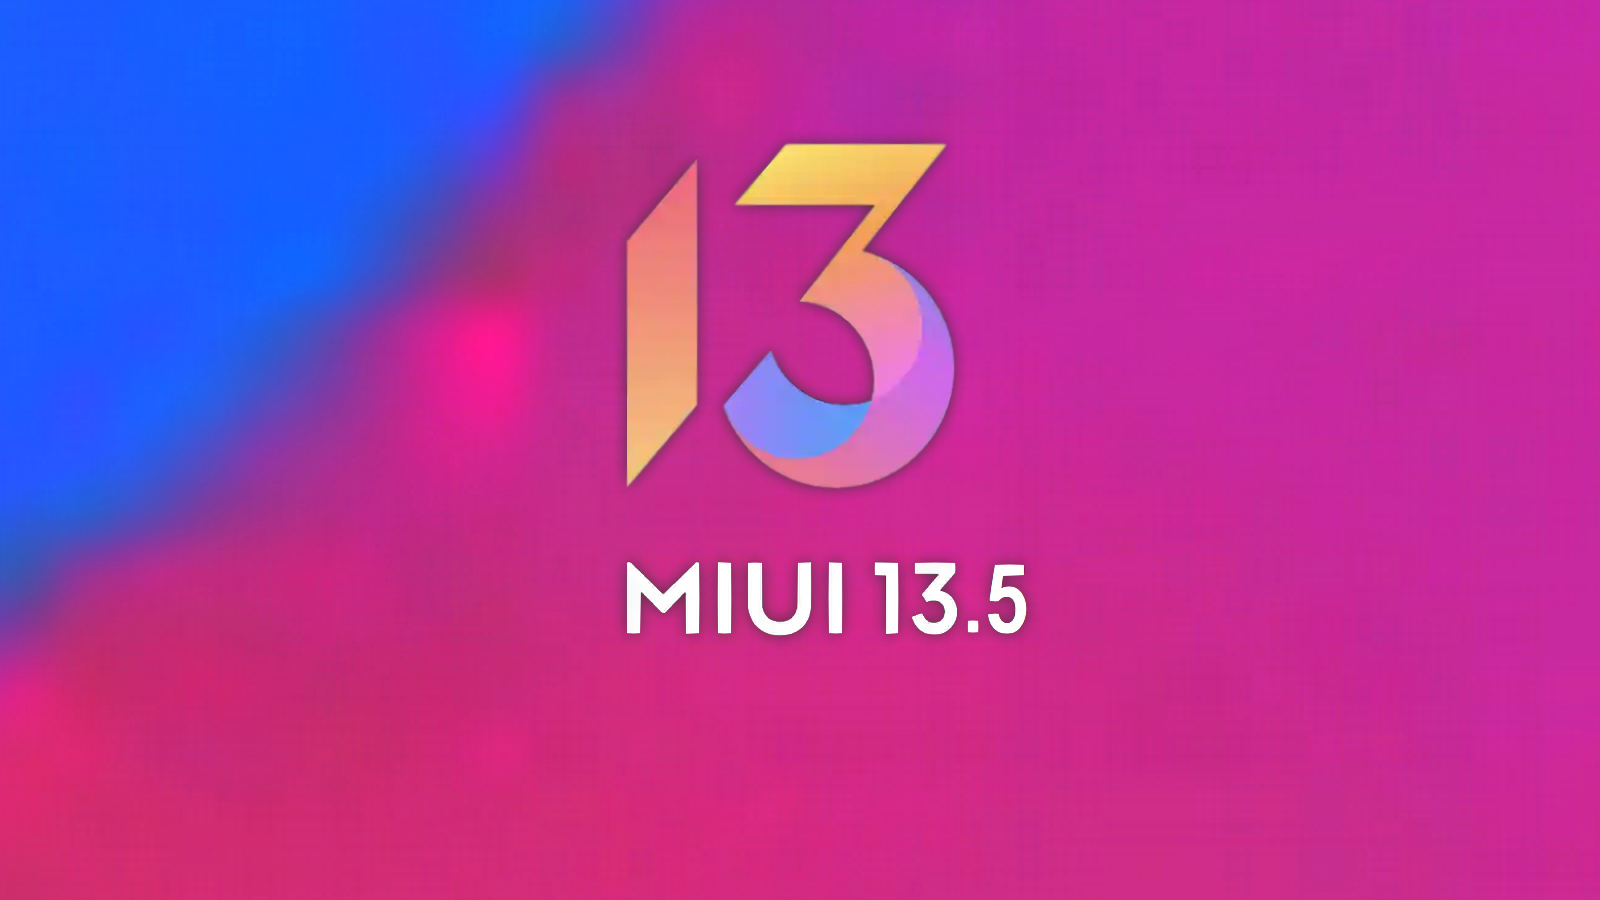 121 smartfonów Xiaomi otrzyma oprogramowanie MIUI 13.5: opublikowano zaktualizowaną listę